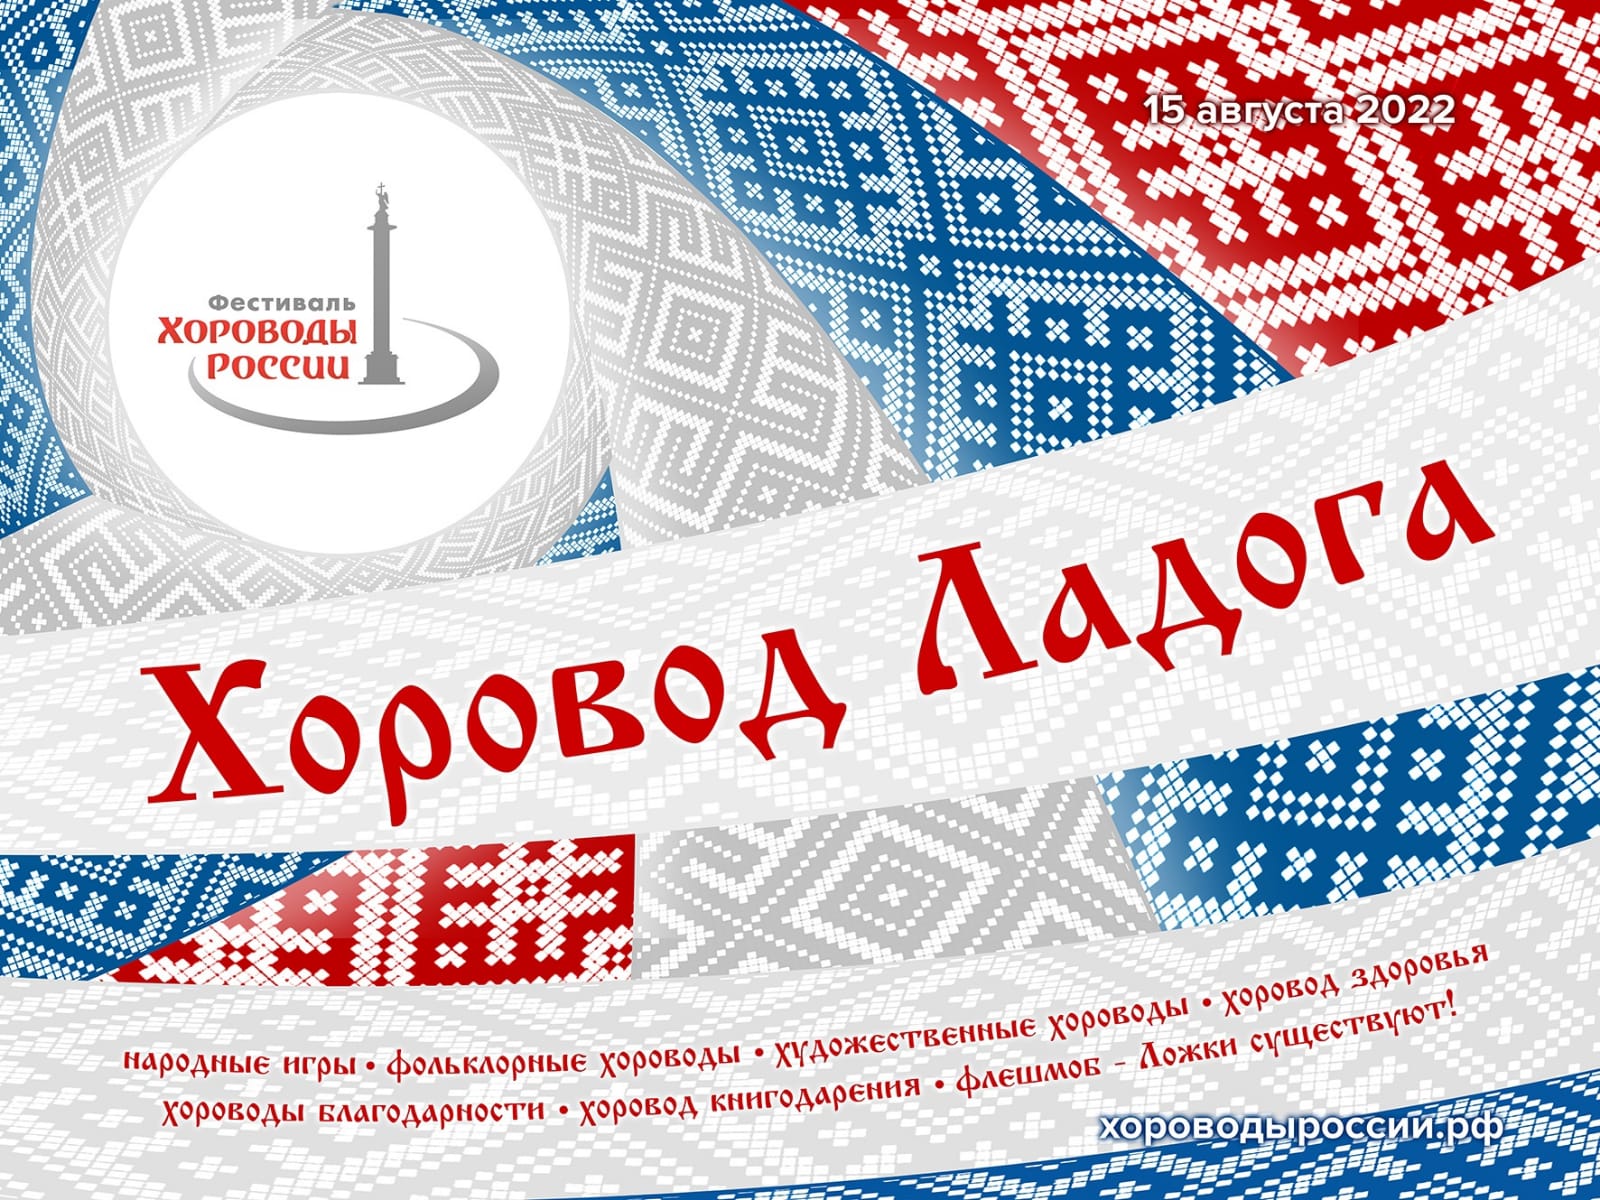 Приглашаем посетить Фестиваль «Хороводы России 2022» на Дворцовой площади